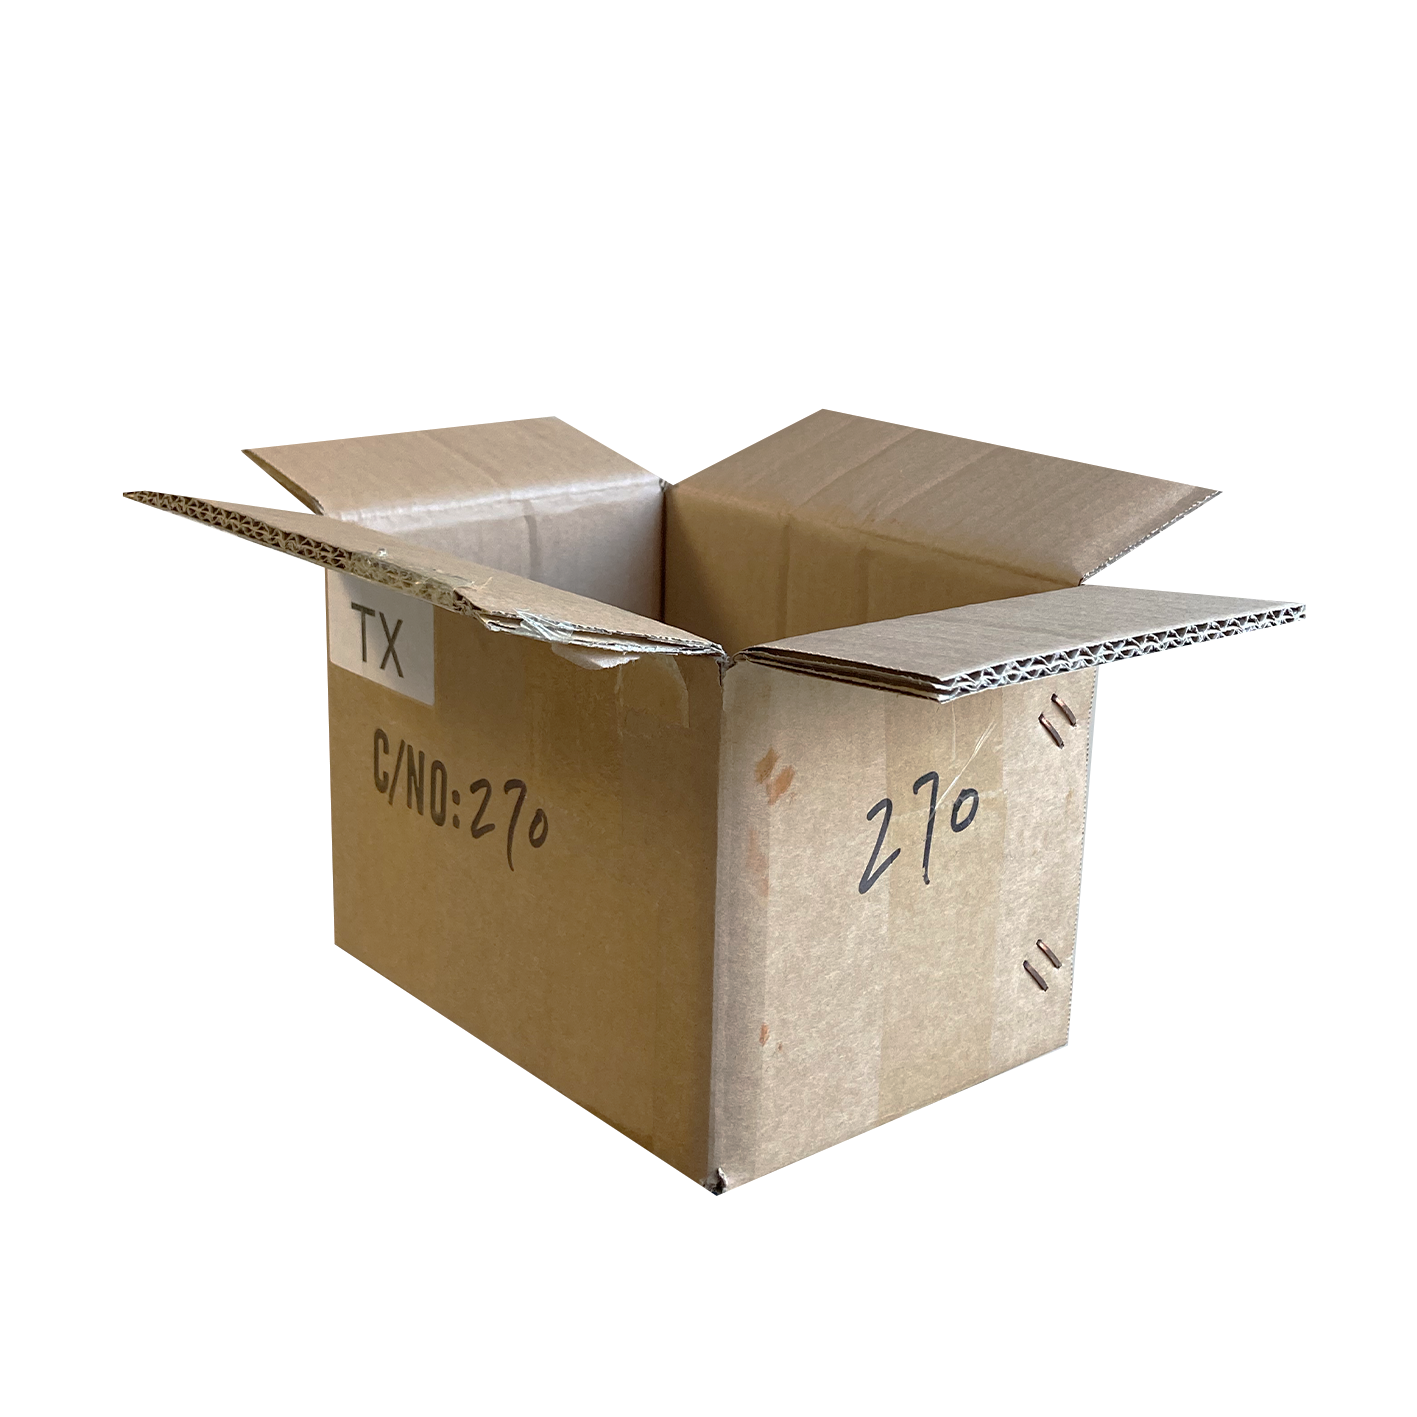 Caisse en carton double cannelure 20 x 15 x 15 (cm)._0